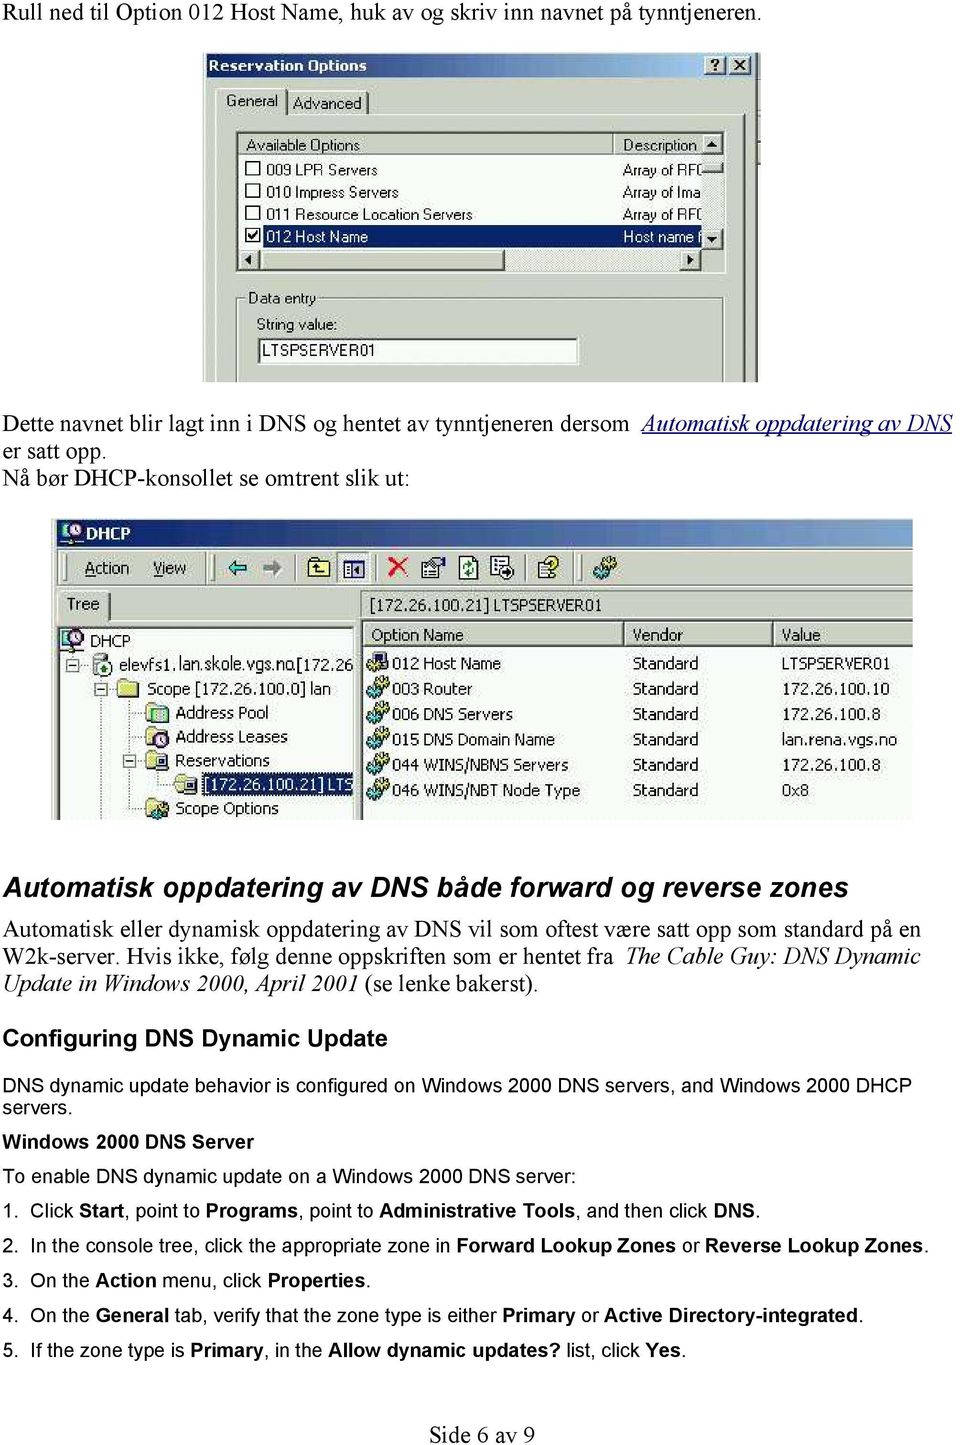 W2k-server. Hvis ikke, følg denne oppskriften som er hentet fra The Cable Guy: DNS Dynamic Update in Windows 2000, April 2001 (se lenke bakerst).